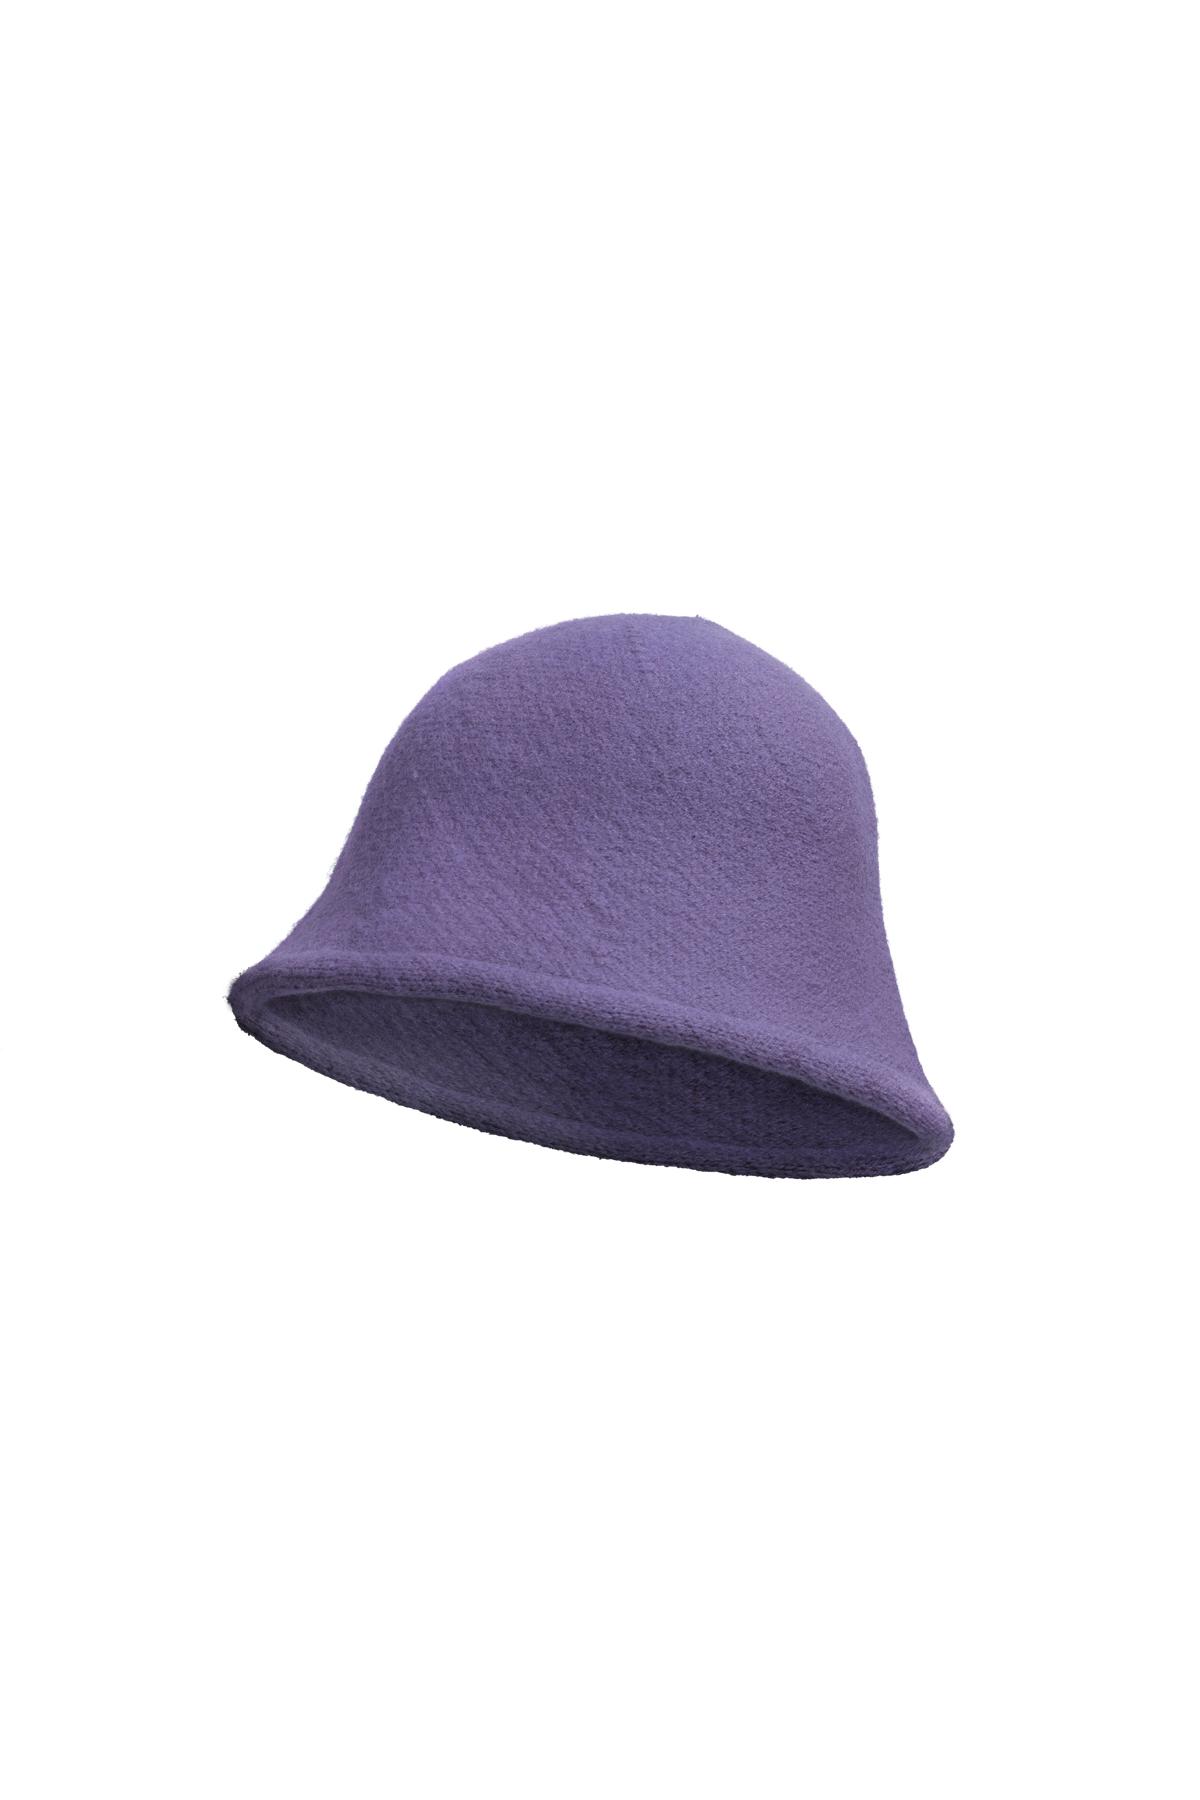 Bucket hat solid color Purple Acrylic 